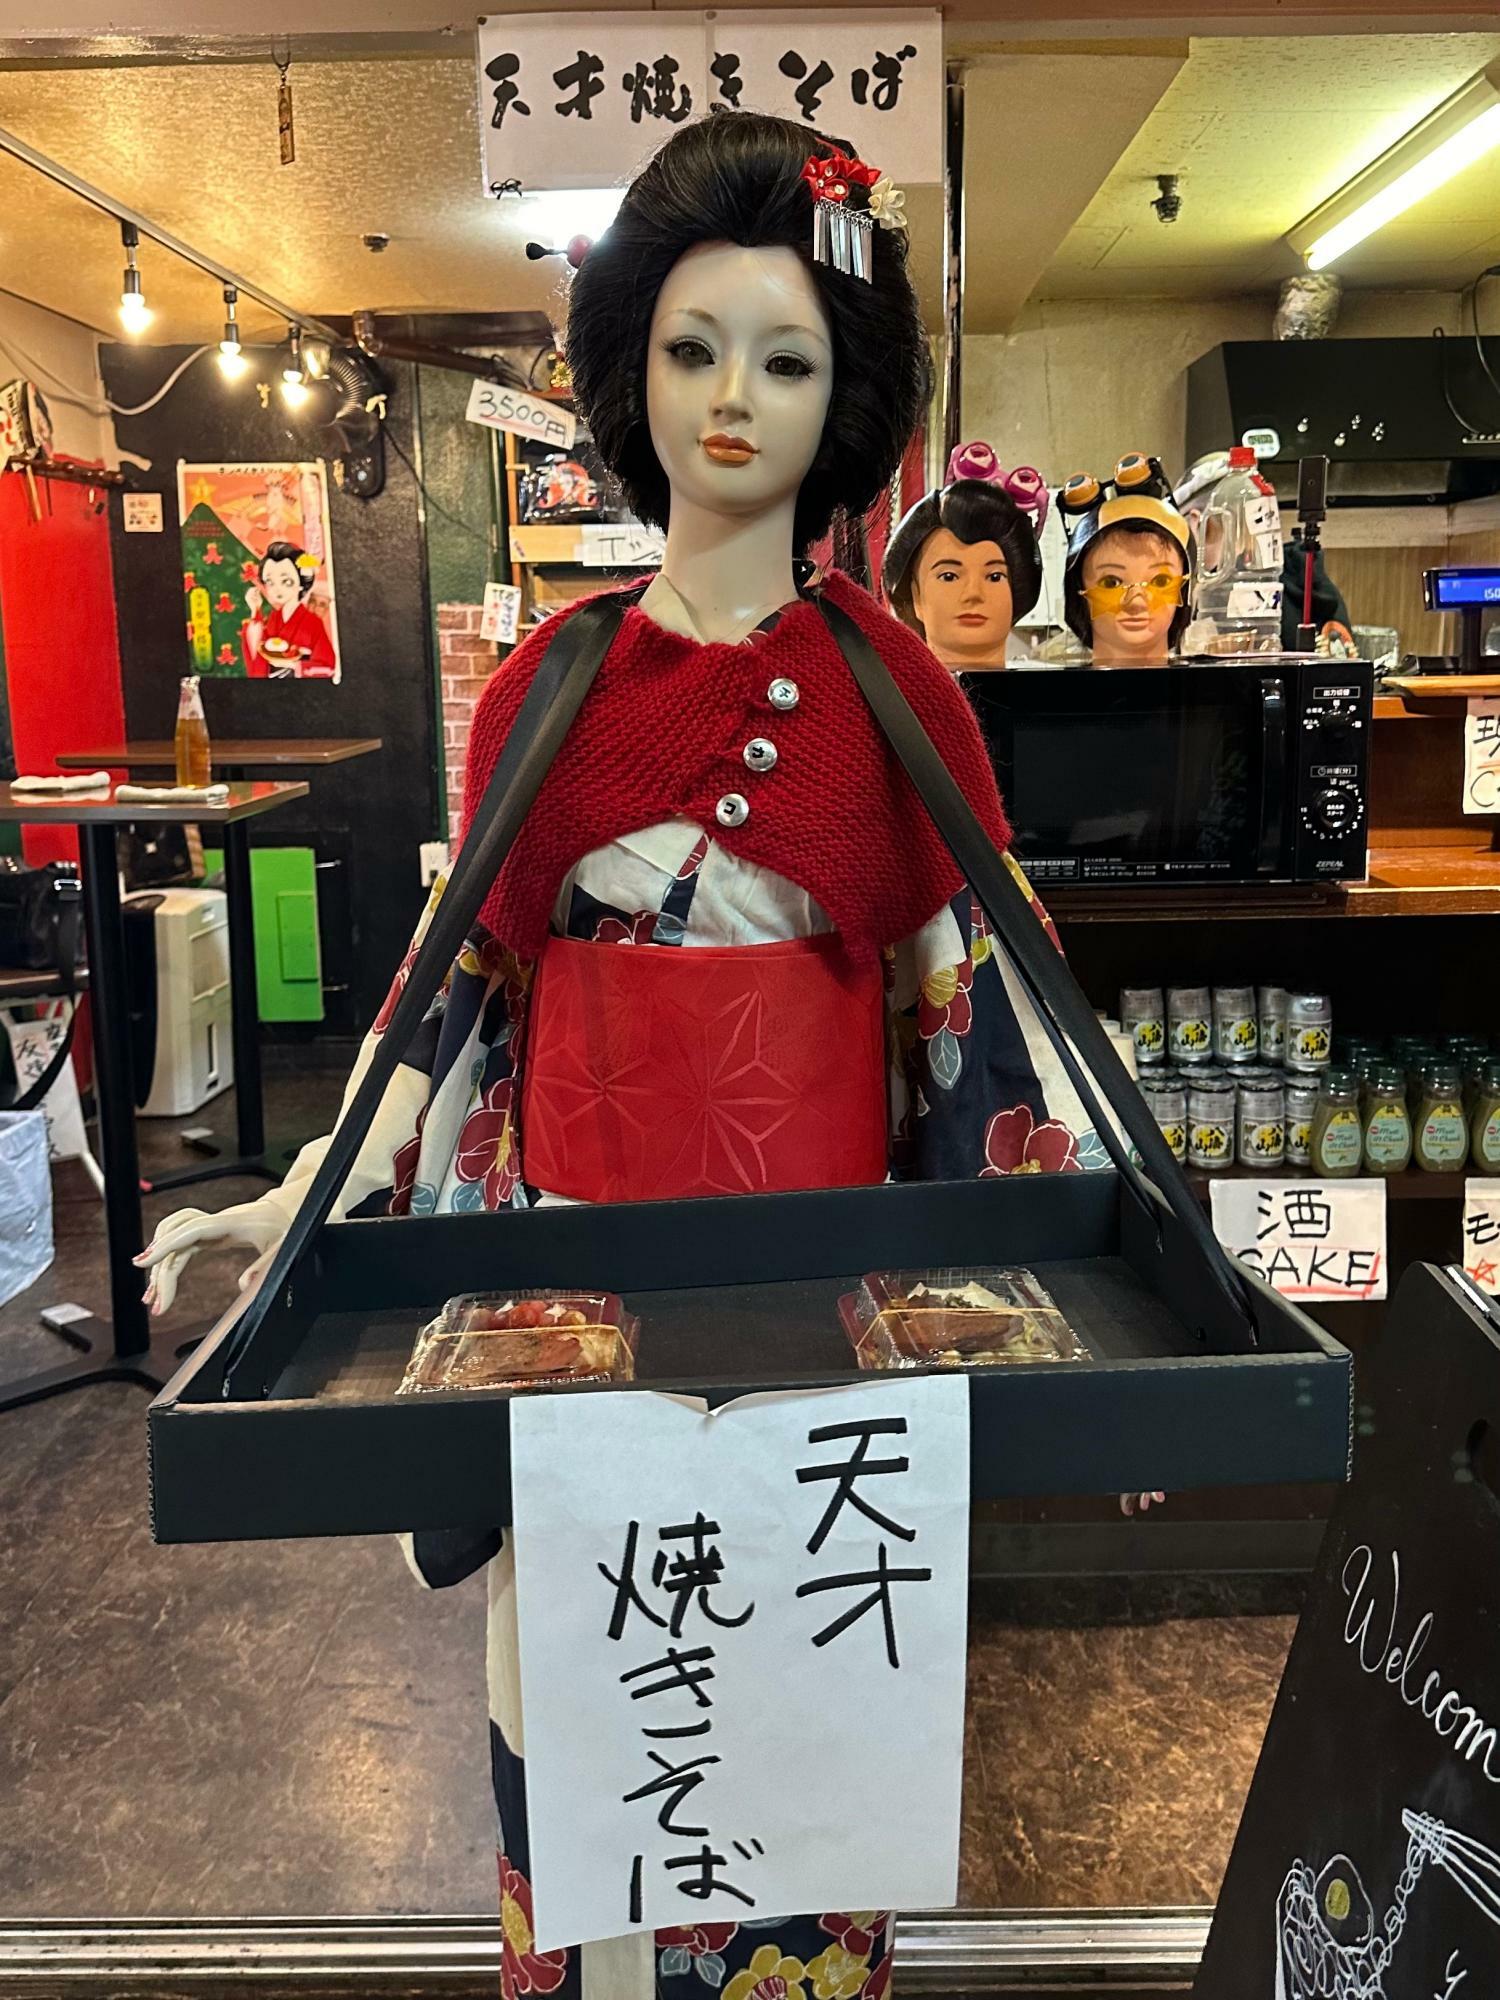 お店の看板娘「浅草チカコ」ちゃんは、テイクアウトの焼きそばも売る働き者。